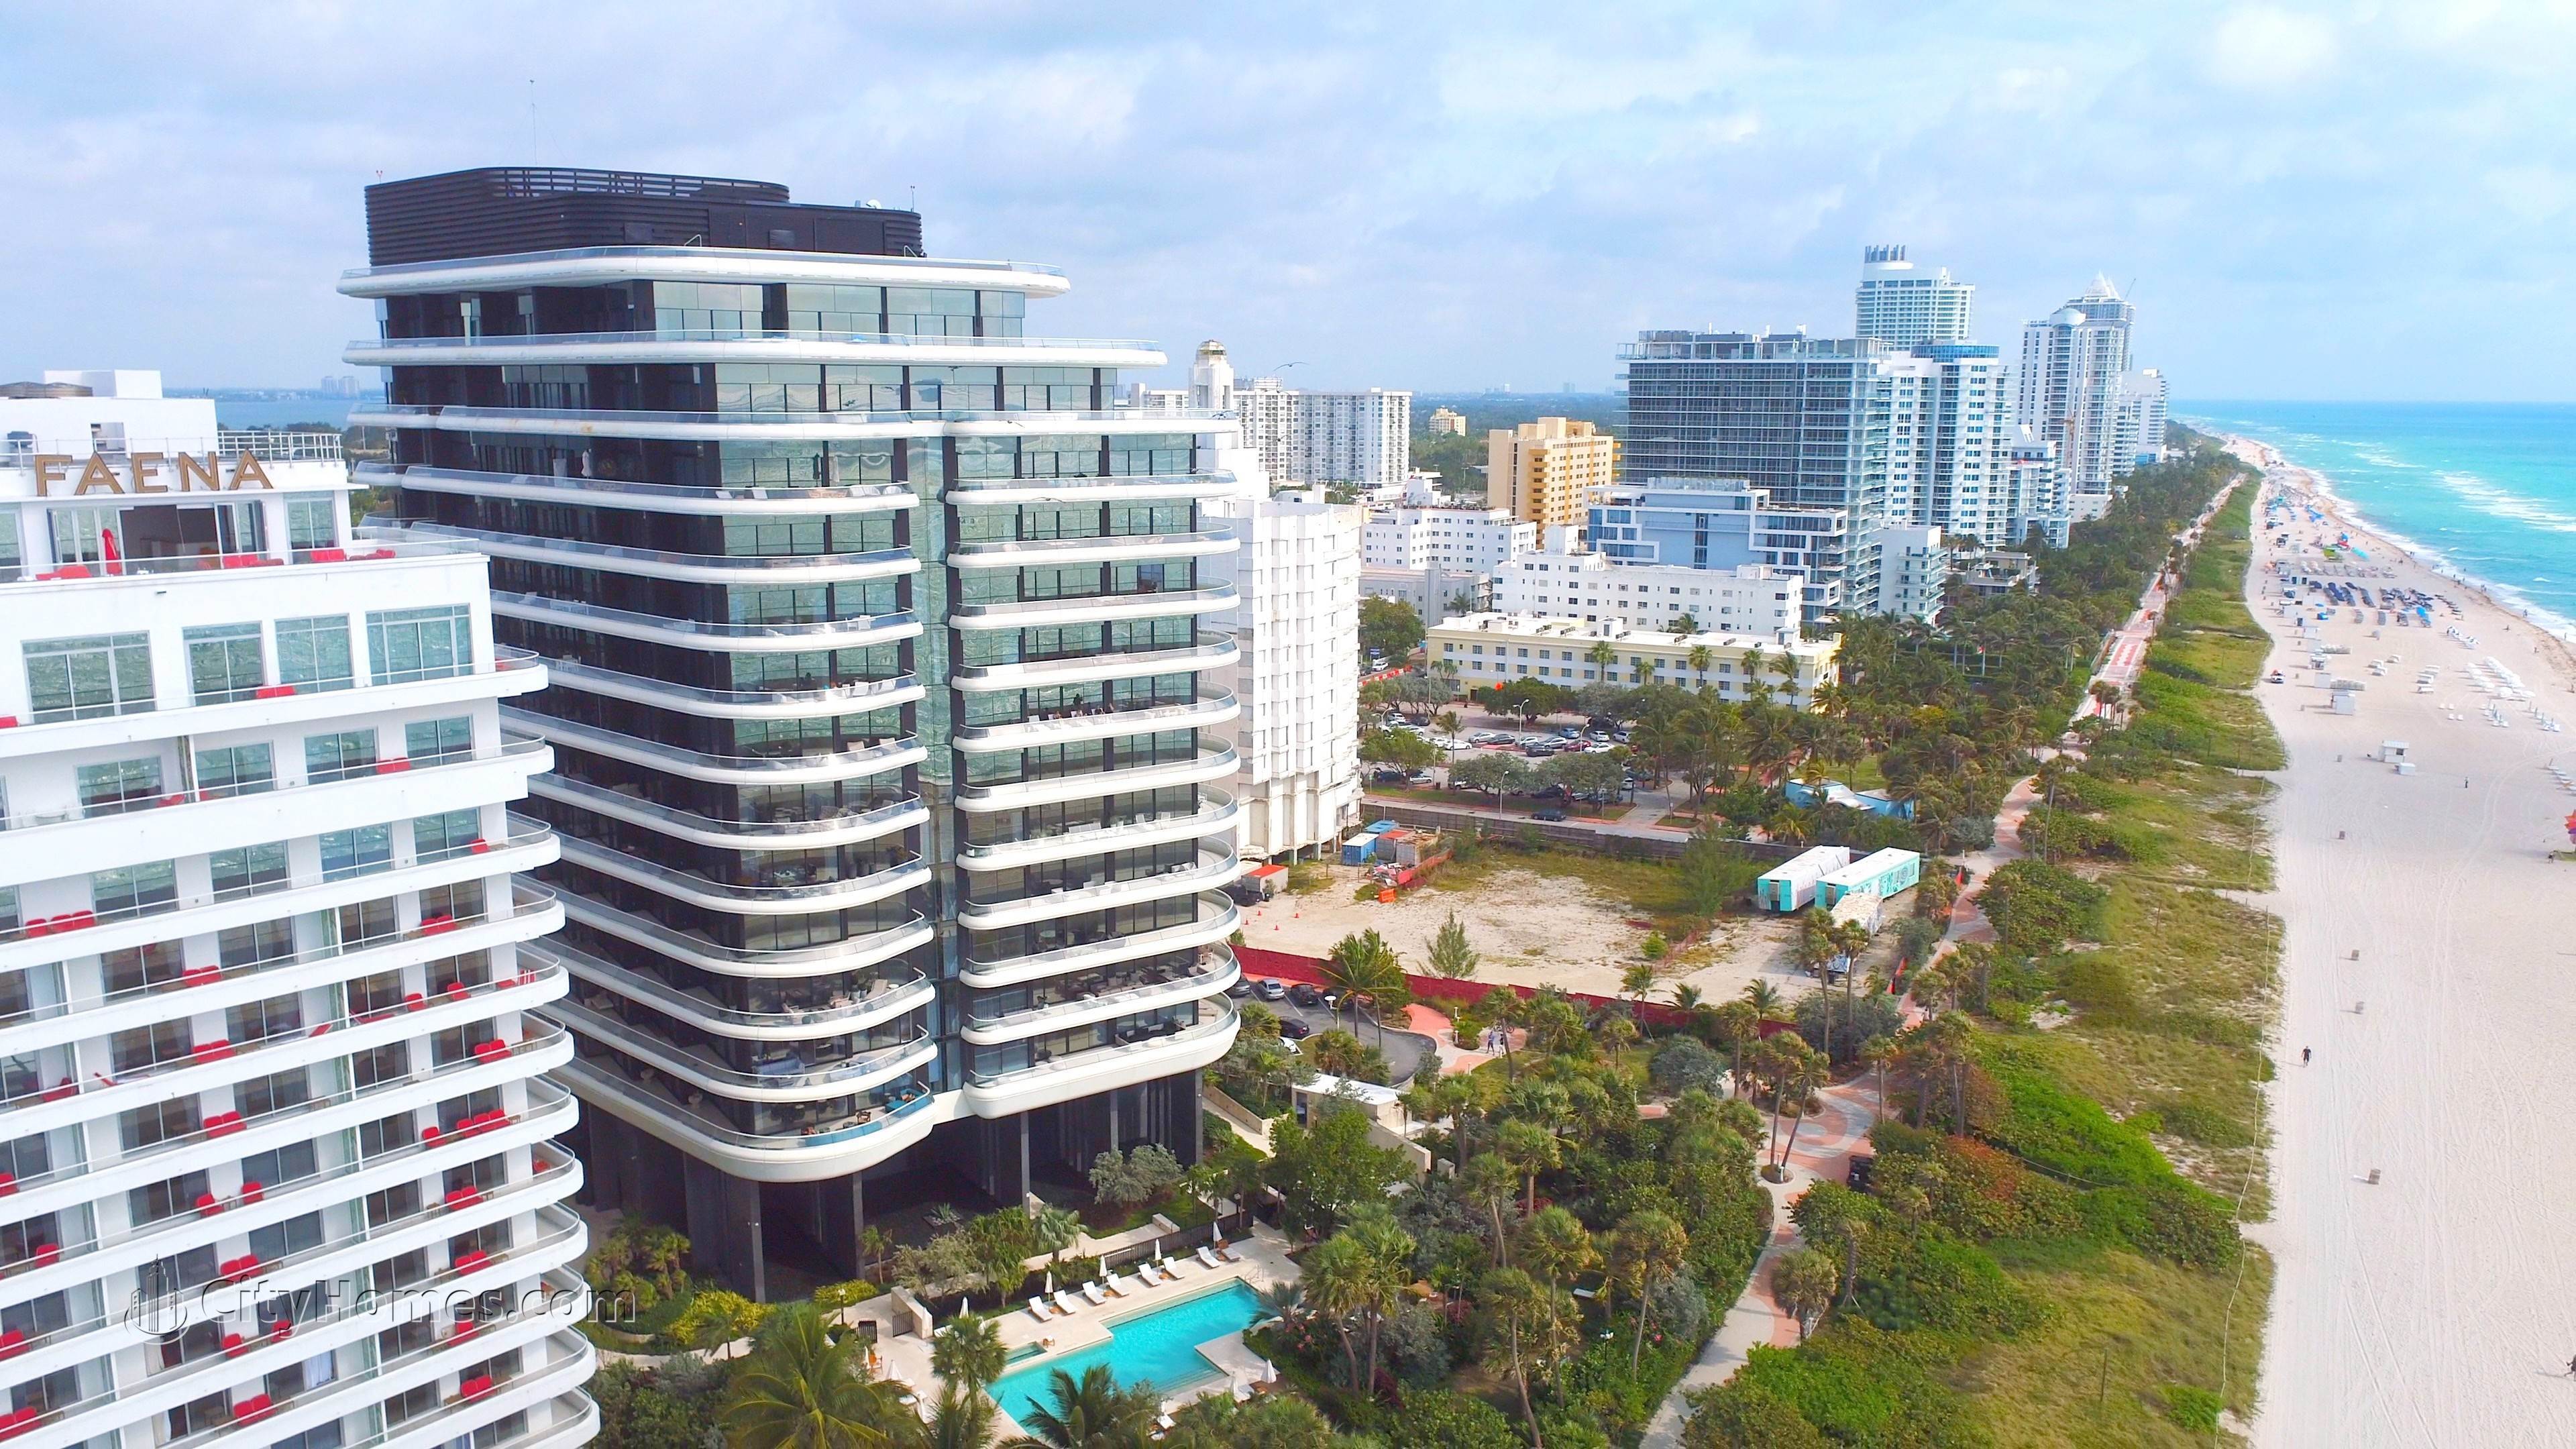 FAENA HOUSE MIAMI BEACH edificio a 3315 Collins Avenue, Mid Beach, Miami Beach, FL 33140